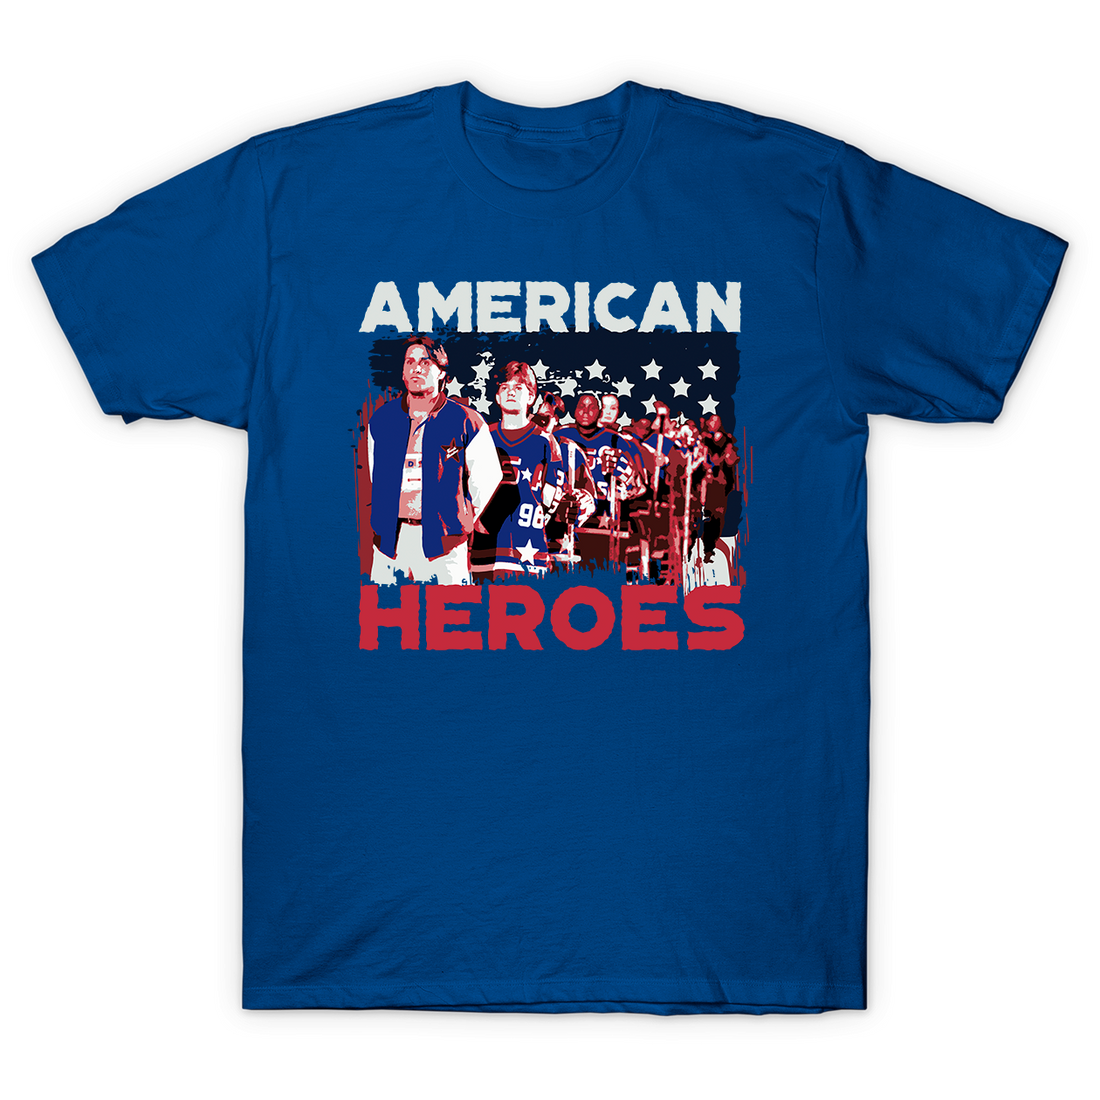  American Heroes